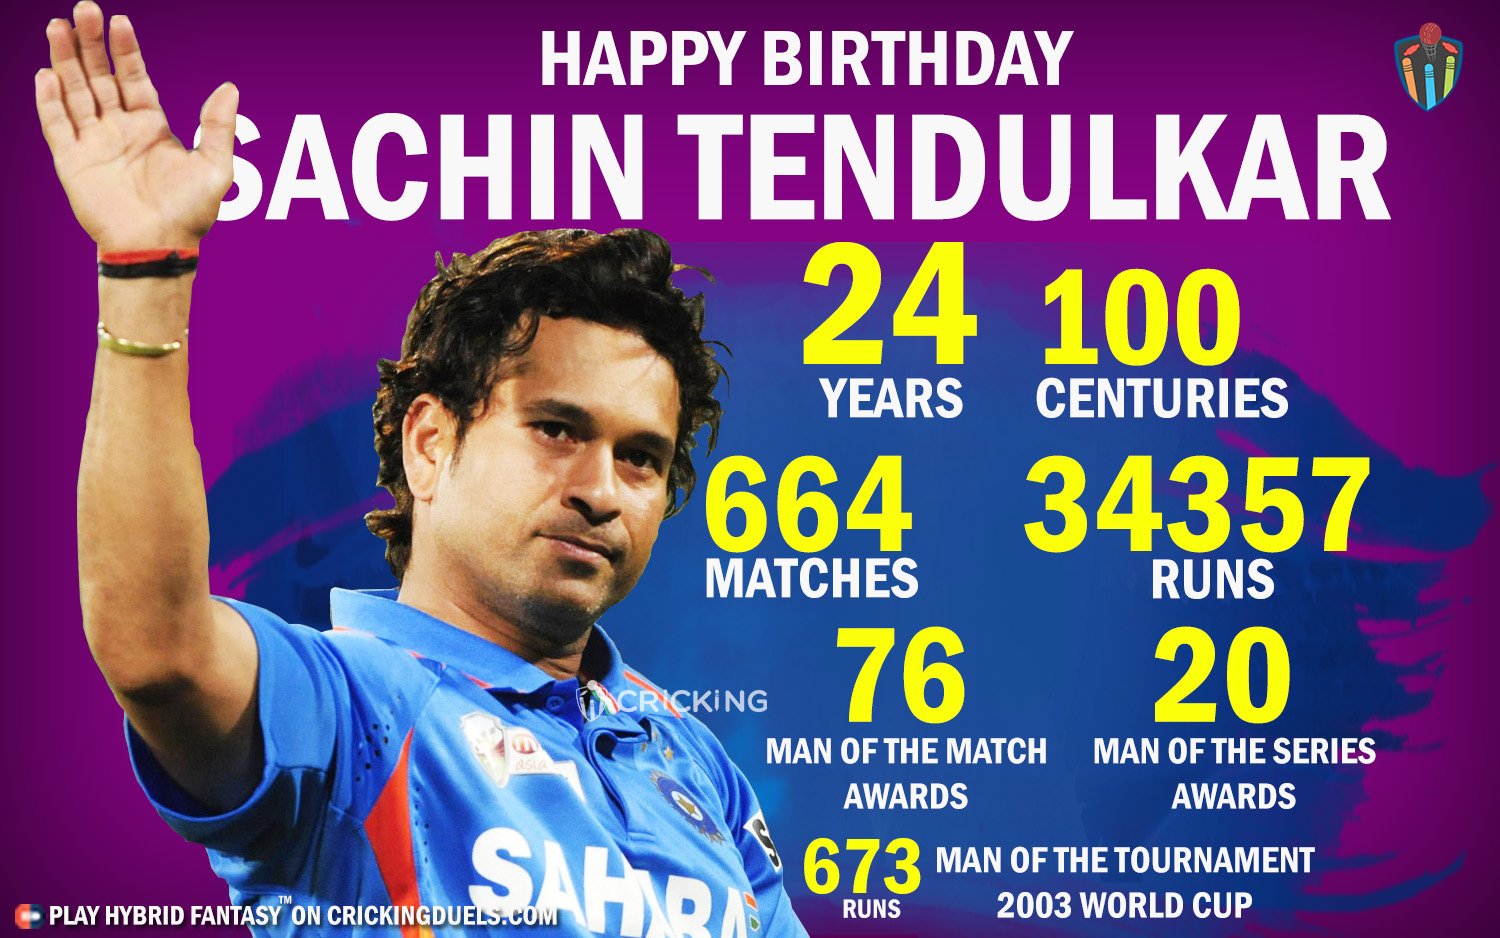 Happy Birthday Sachin Tendulkar. The legendary cricketer turns 44 today. 